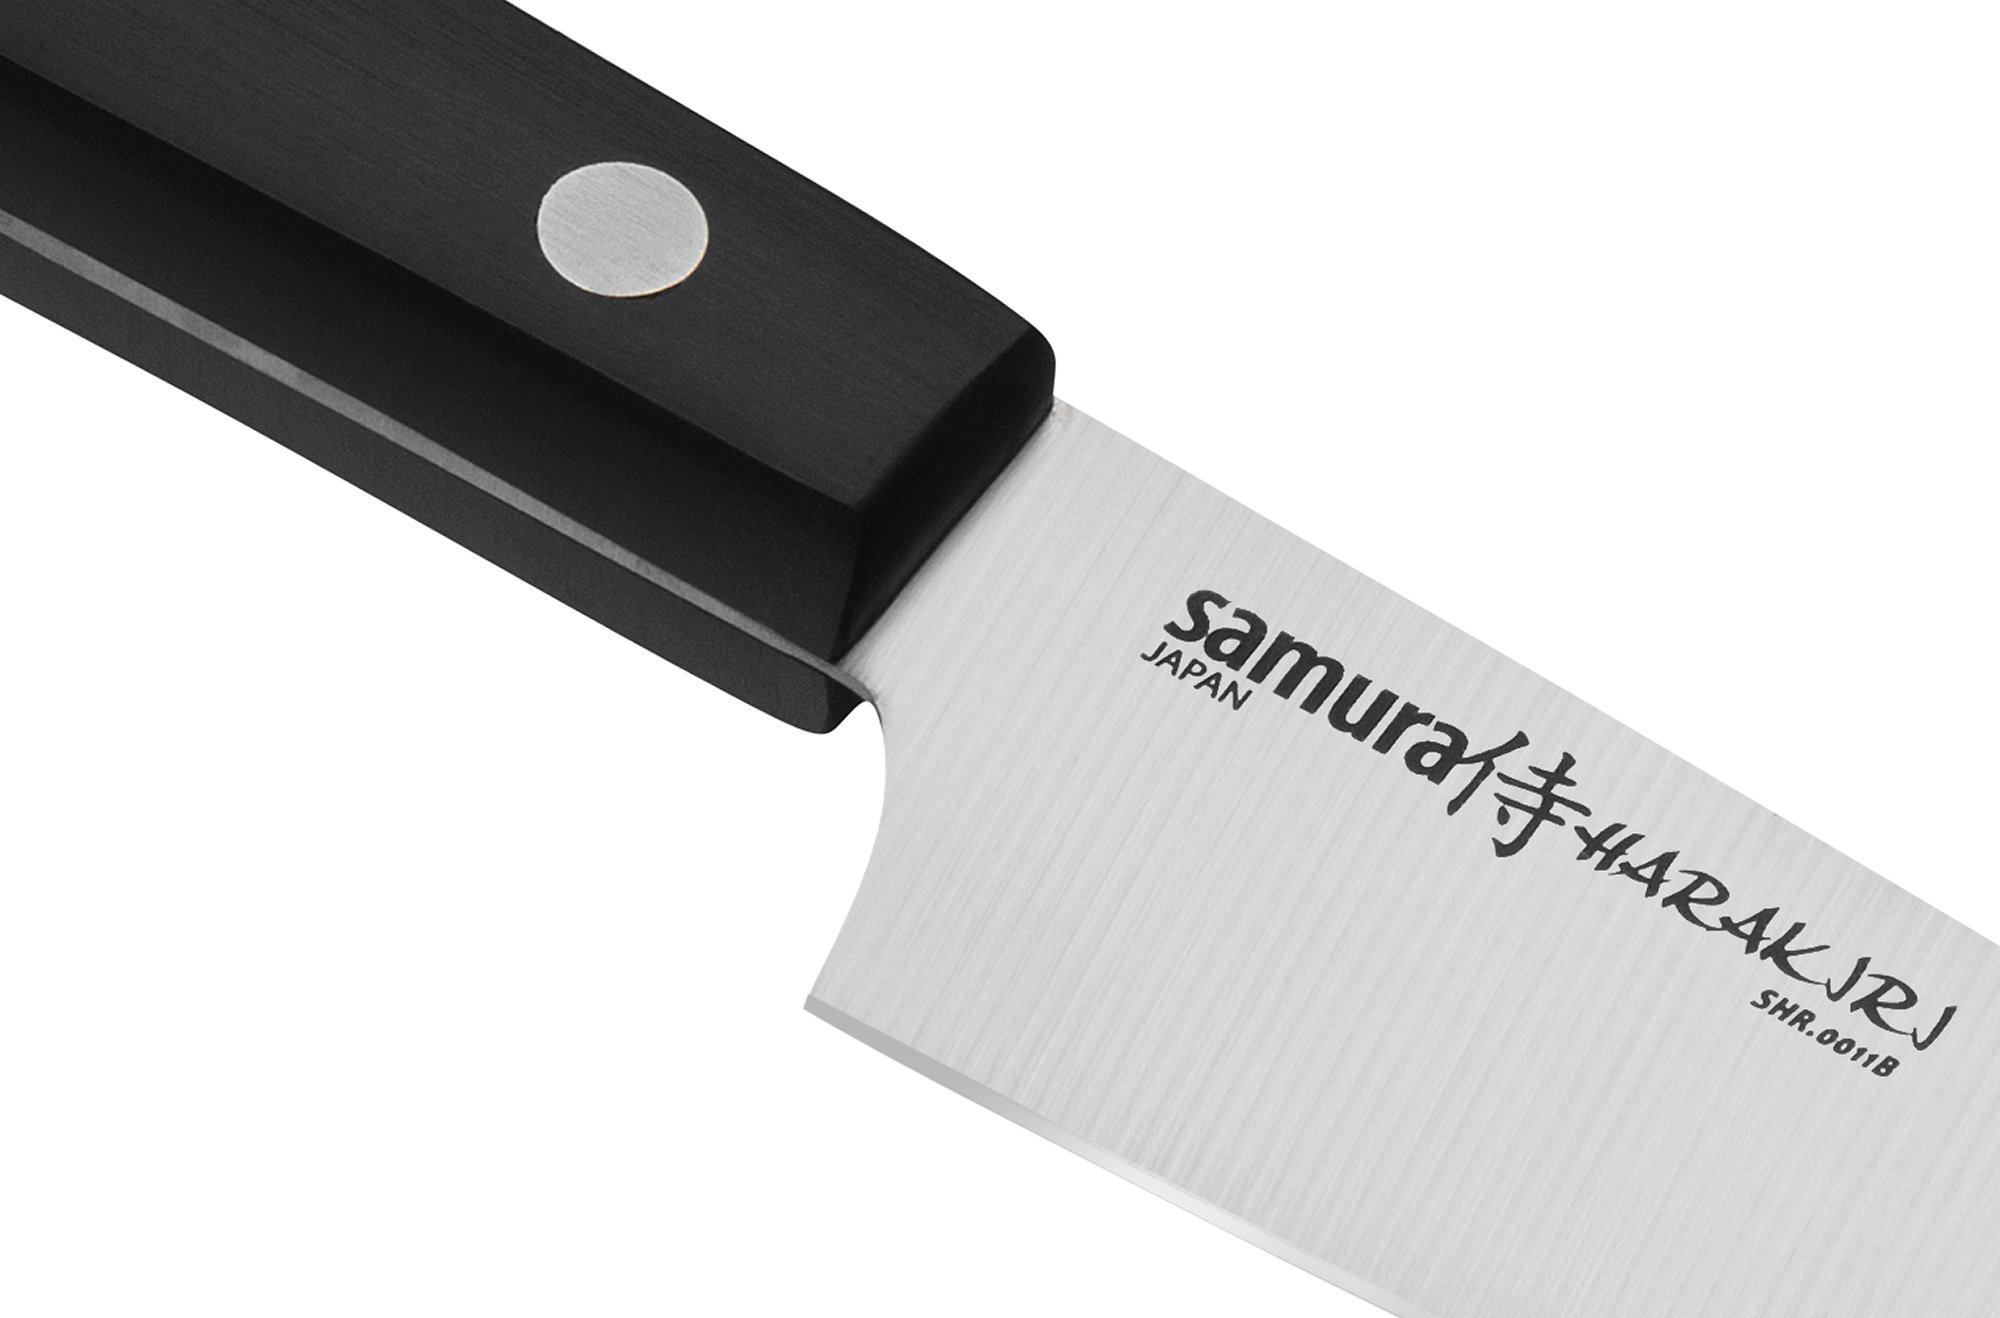 Нож кухонный овощной Samura 